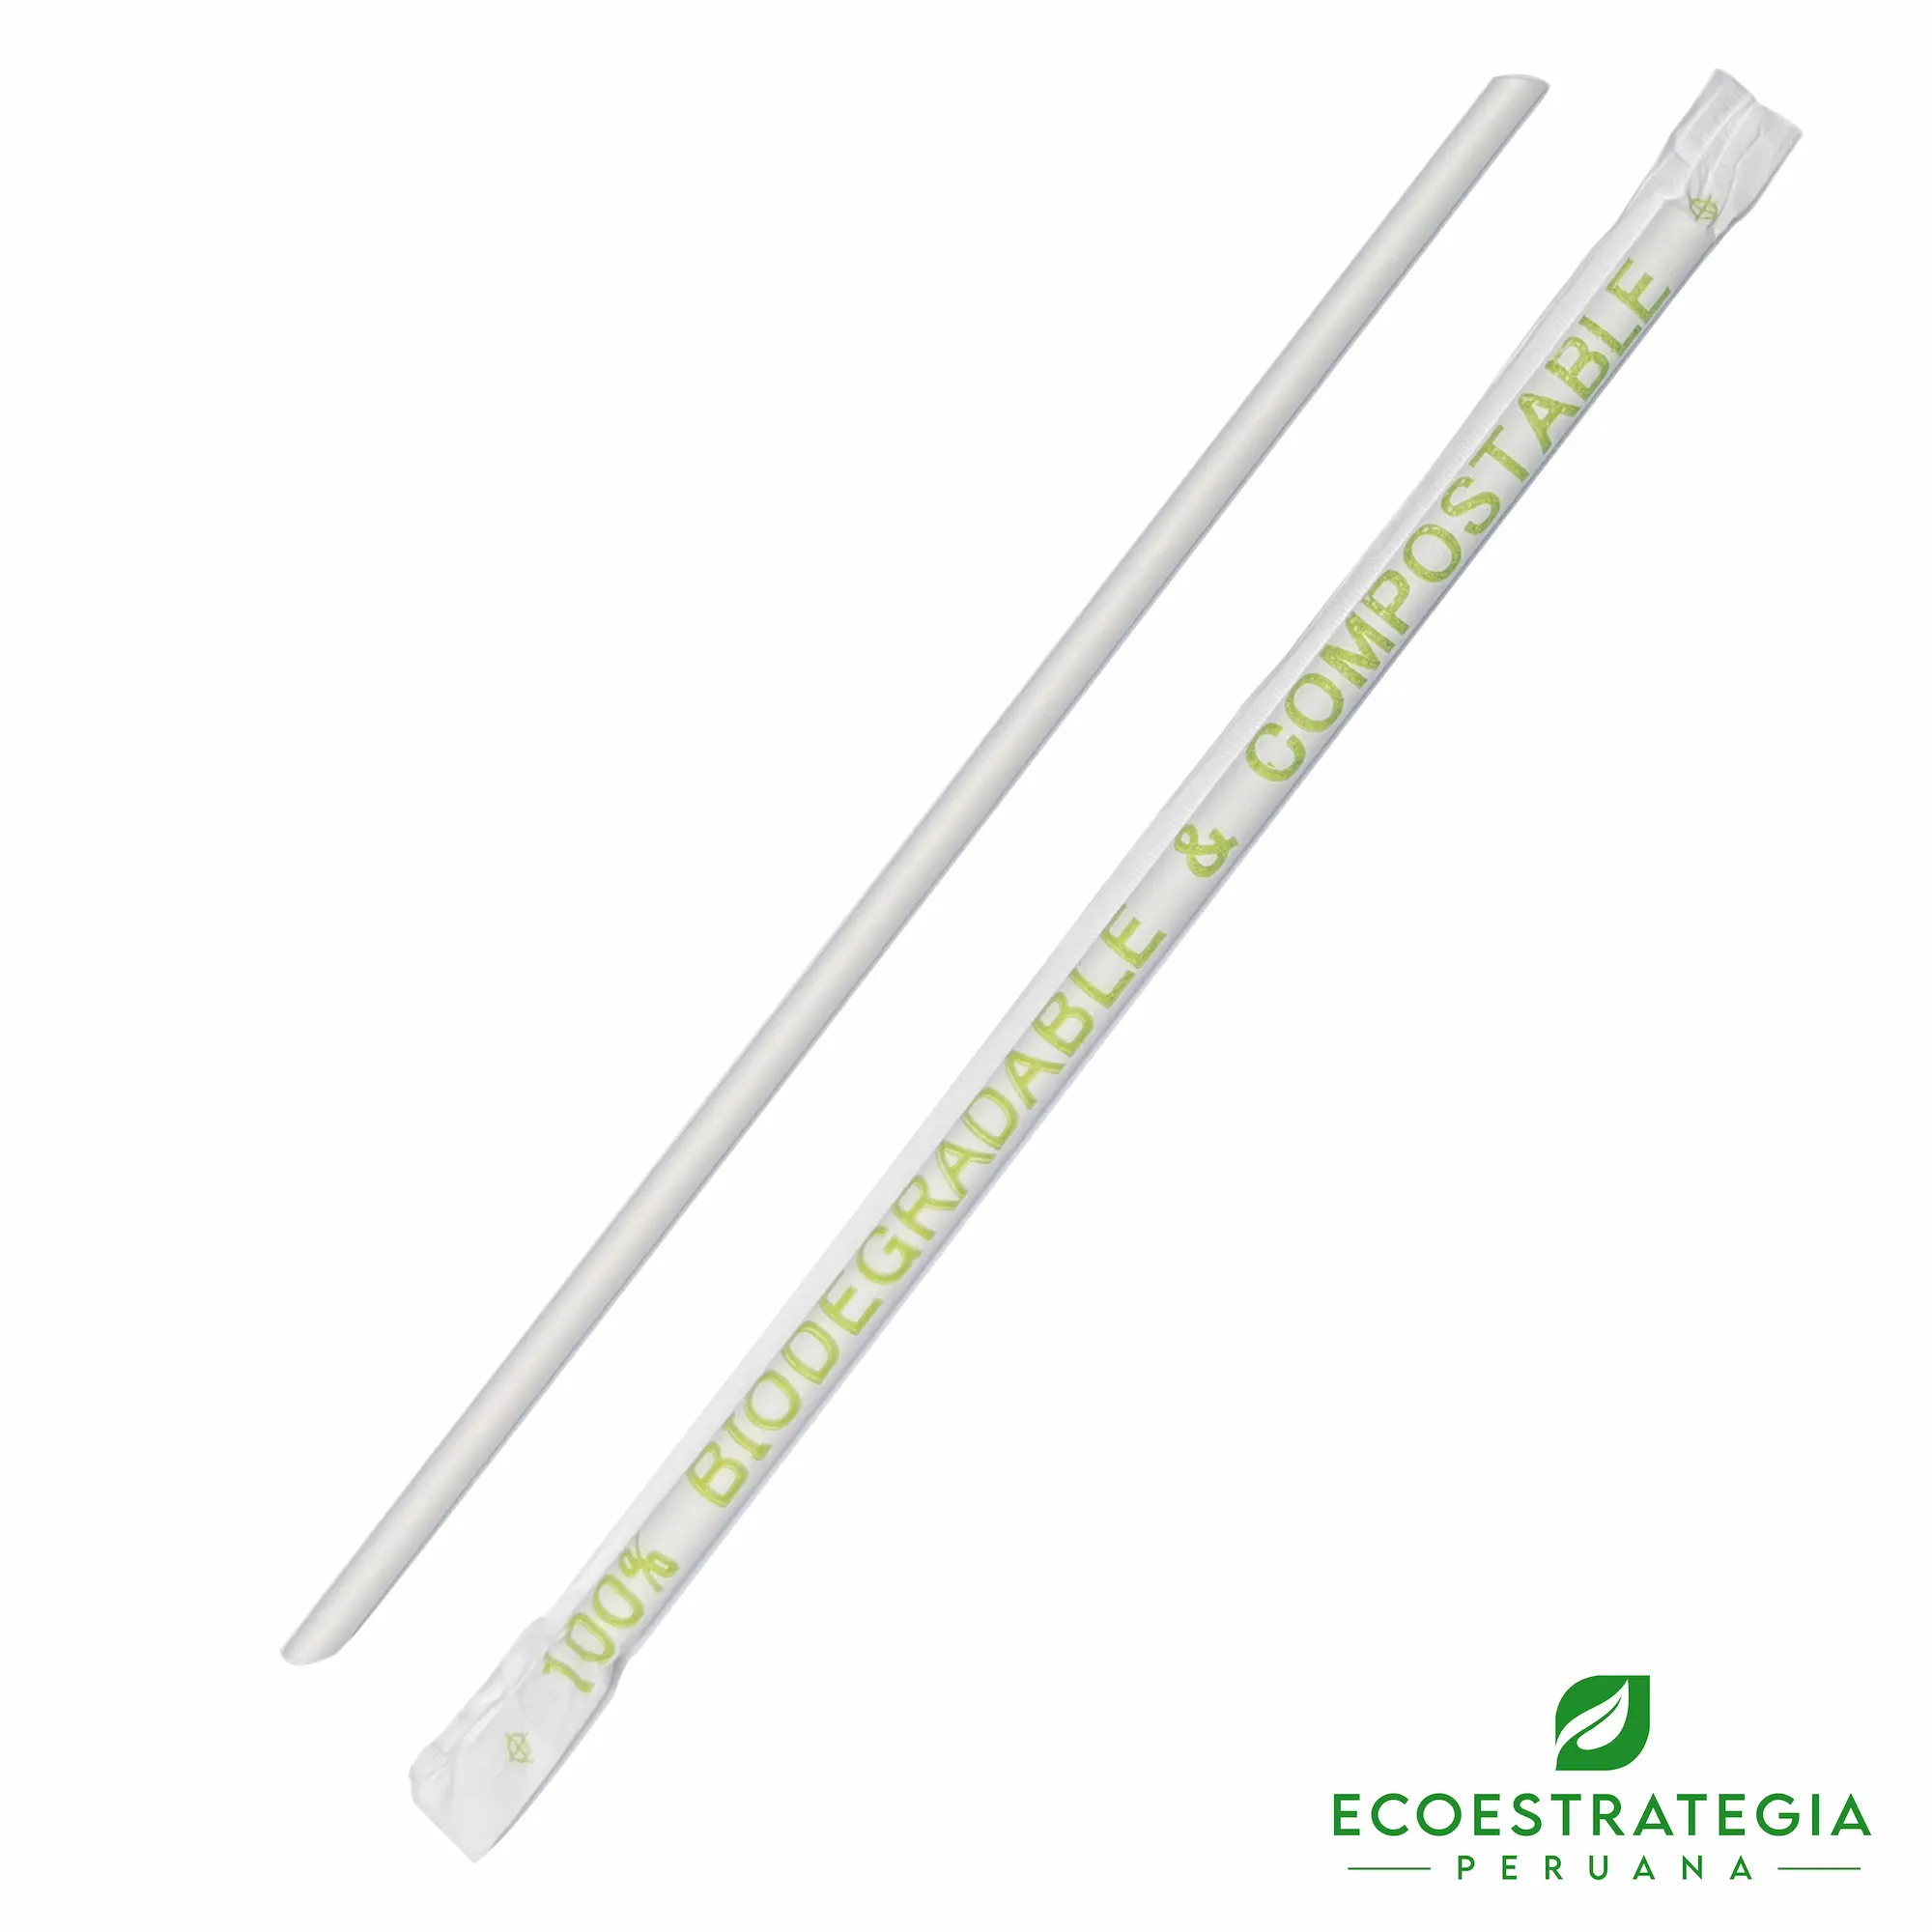 Sorbetes o cañitas biodegradables ecológicos de 6mm EP-ER06 también conocido como sorbete biodegradable de papel, sorbete 6 mm, sorbete biodegradable, sorbete compostable, sorbete de papel, sorbete 100% biodegradable y compostable, sorbete bidoegradable transparente estándar 7.75, sorbete transparente 20 cms, cañitas biodegradables, sorbetes comestibles, sorbetes precio, sorbetes comestibles pdf, sorbetes biodegradable Perú, sorbete, sorbetes sueltos, sorbetes compostables con estuche, sorbete biodegradable 20 cm, fabricante de sorbetes biodegradables, distribuidor de sorbetes de papel, envases biodegradables, envase biodegradable, envase biodegradables para mayoristas, envase biodegradables al por mayor, envases biodegradables económicos, envases biodegradables precios, carton biodegradables, envases reciclables , popote reciclable, cañita biodegradable, pitillo biodegradable, pitillo reciclable, pitillo ecológico, caña biodegradable, cañita reciclable, cañita ecológica, mayorista de sorbetes de papel